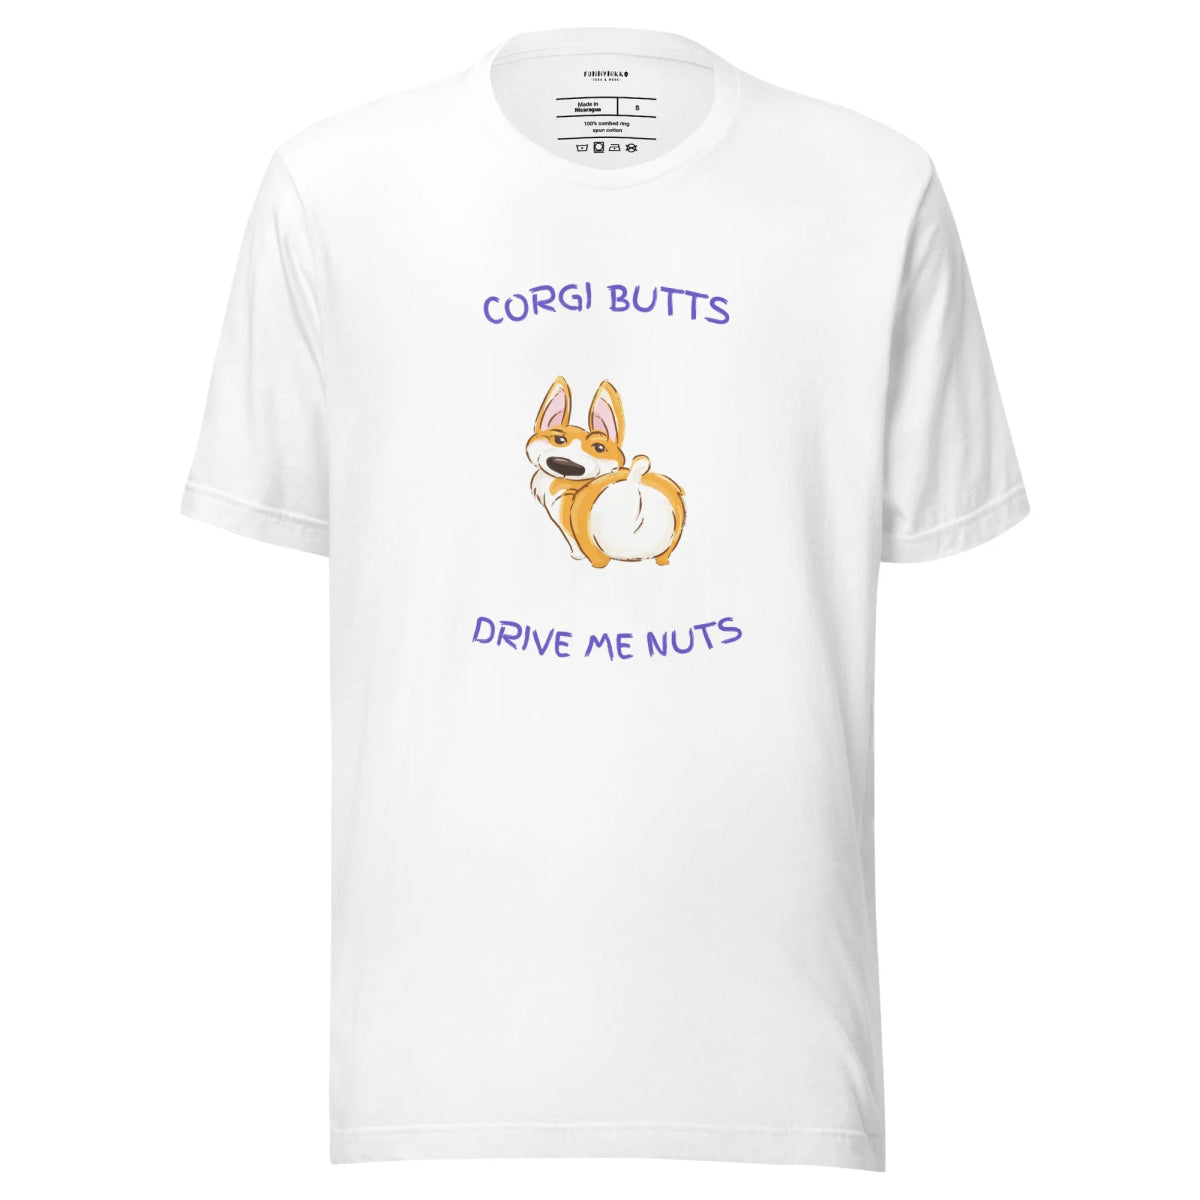 The Corgi Butts Staple T-Shirt - Funny Nikko